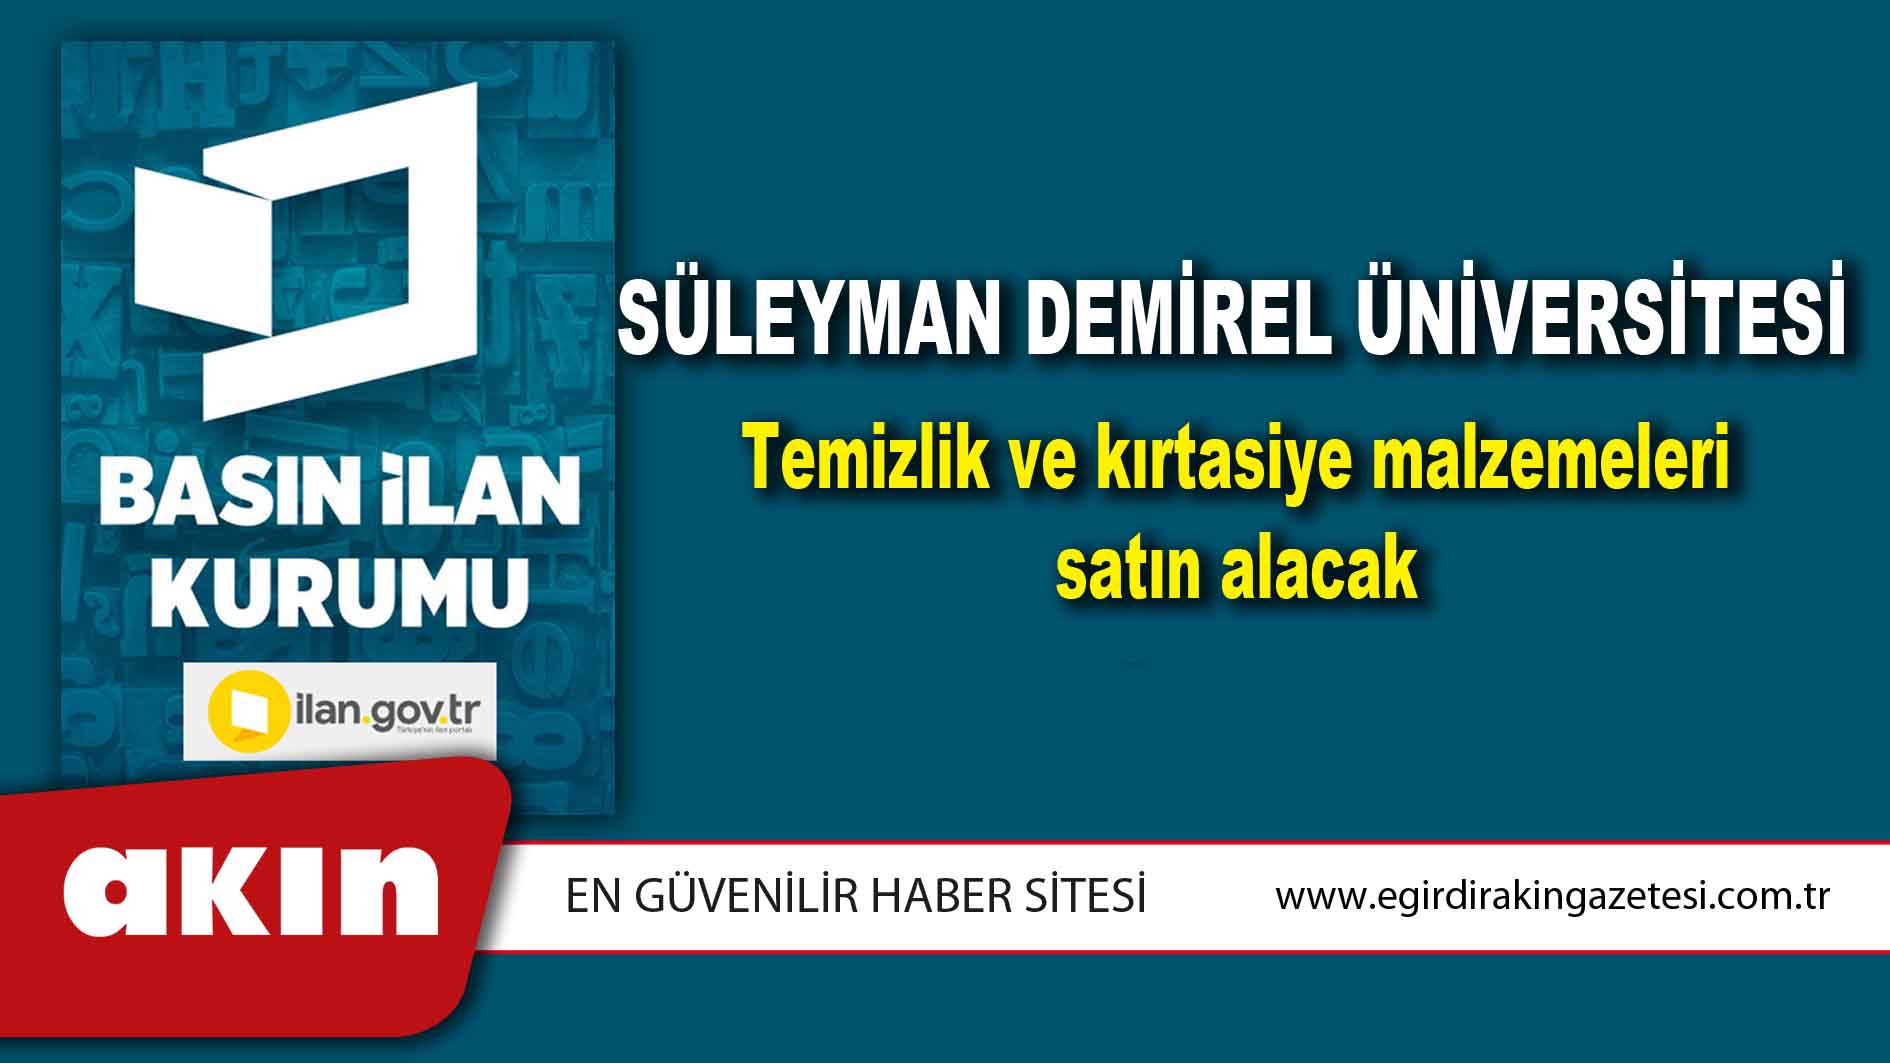 eğirdir haber,akın gazetesi,egirdir haberler,son dakika,Süleyman Demirel Üniversitesi Temizlik ve kırtasiye malzemeleri satın alacak